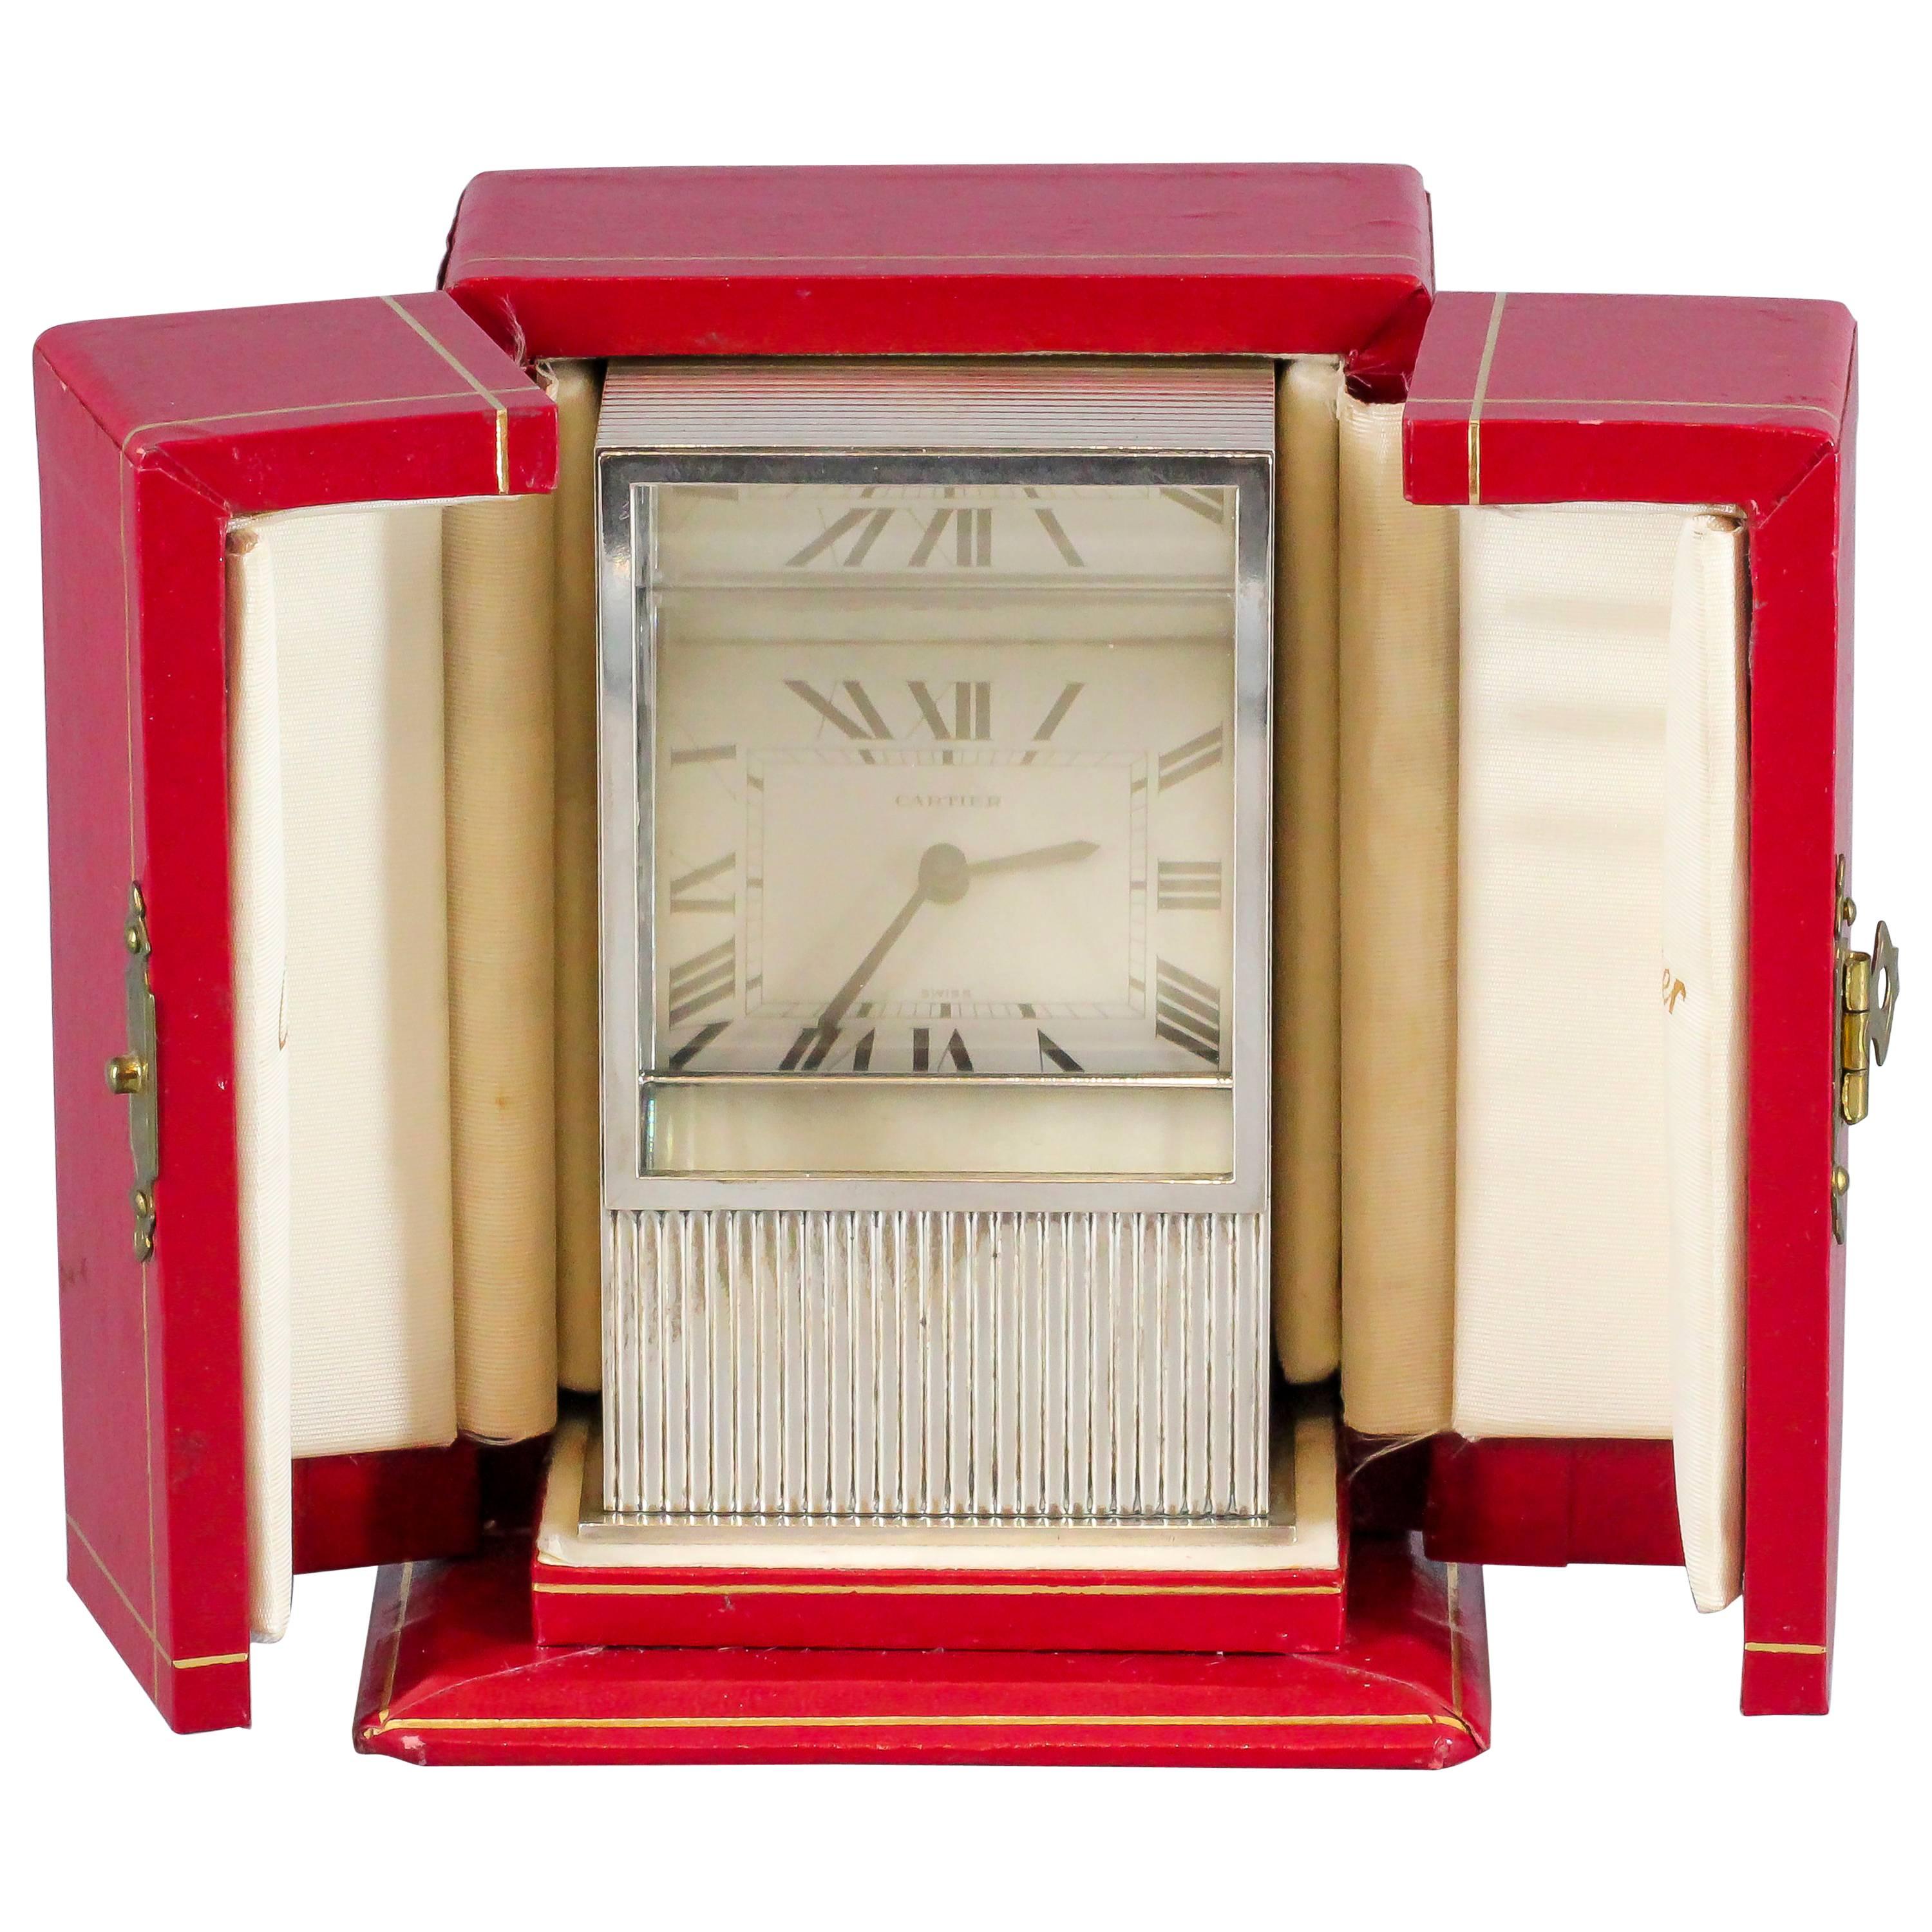 Le temps se dévoile : une rare horloge en argent sterling à prisme mystérieux de Cartier (vers les années 1980)

Intrigue et élégance se côtoient dans cette captivante horloge Prisme Mystère de Cartier, une véritable rareté des années 1980. Ce